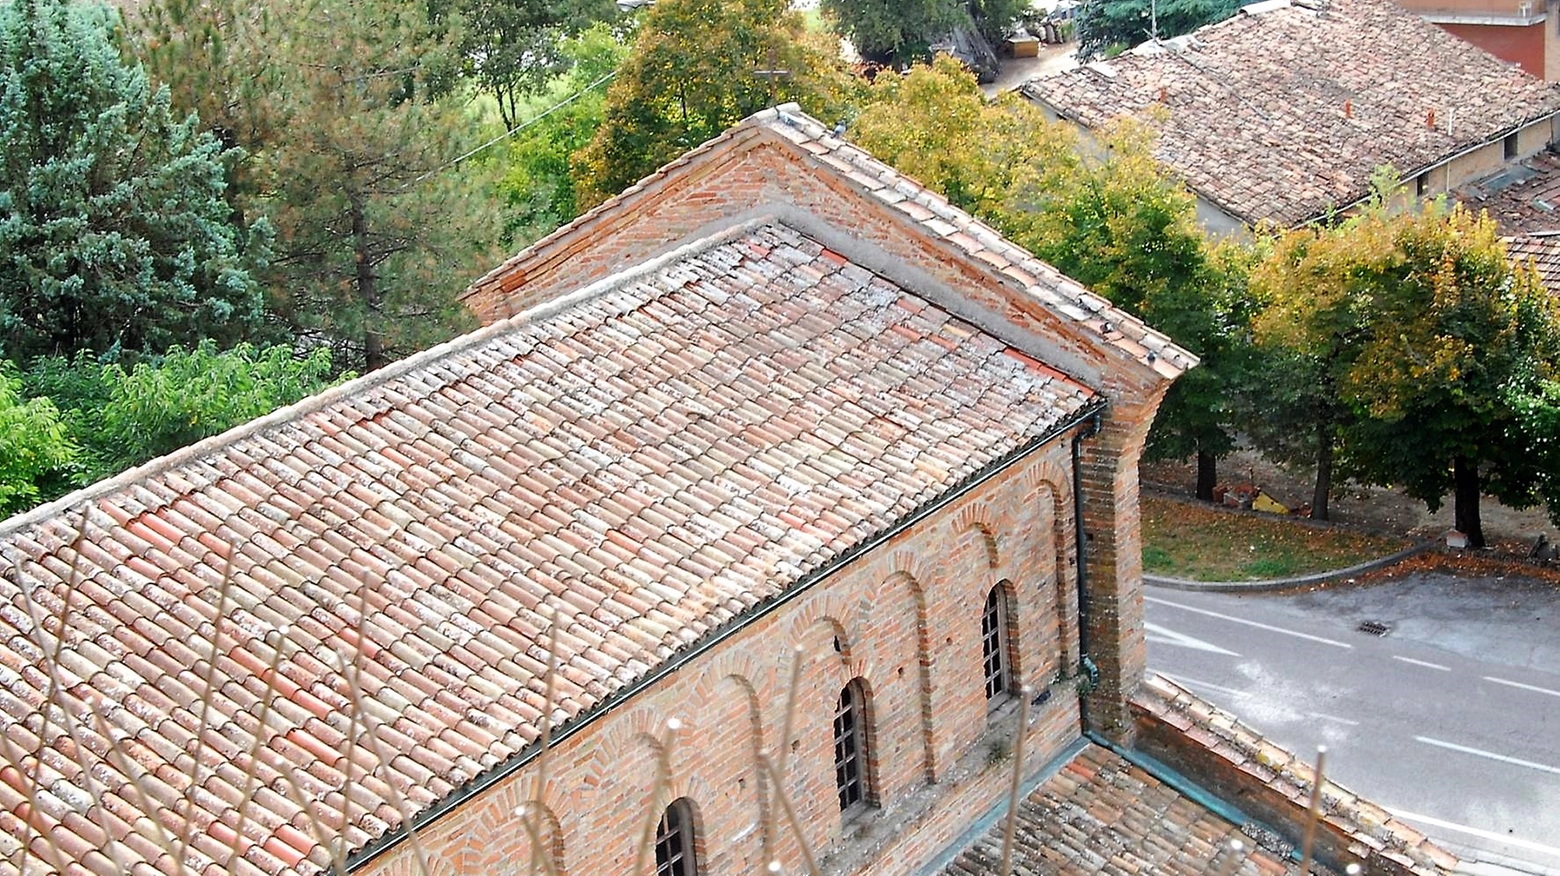 Le associazioni di volontariato hanno contribuito con 35mila euro al restauro dei tetti 